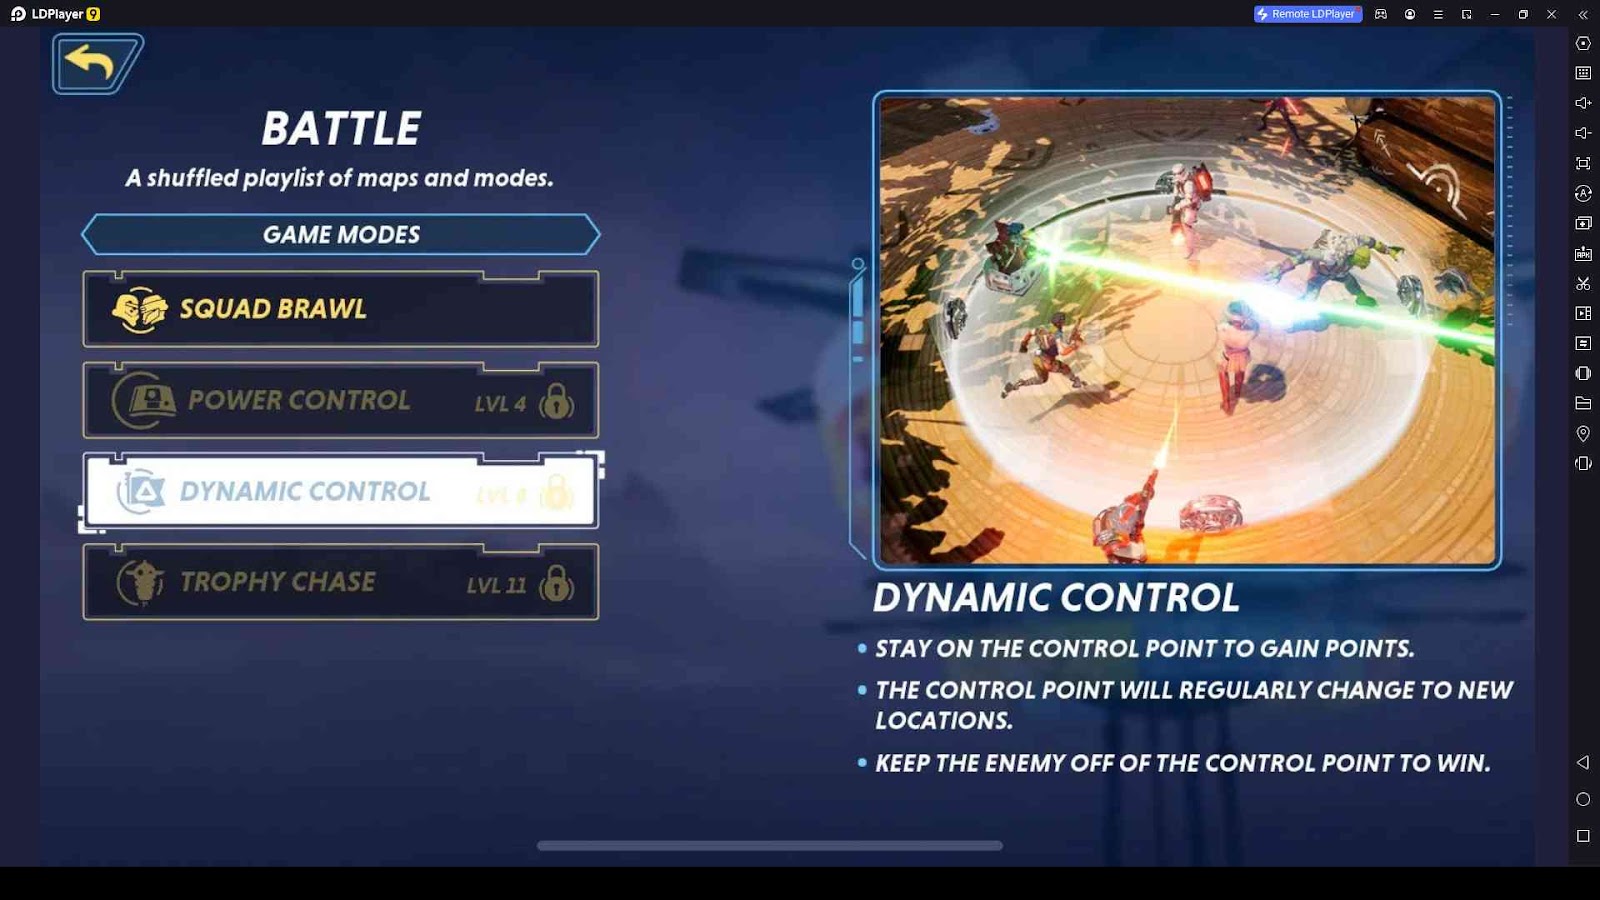 Dynamic Control